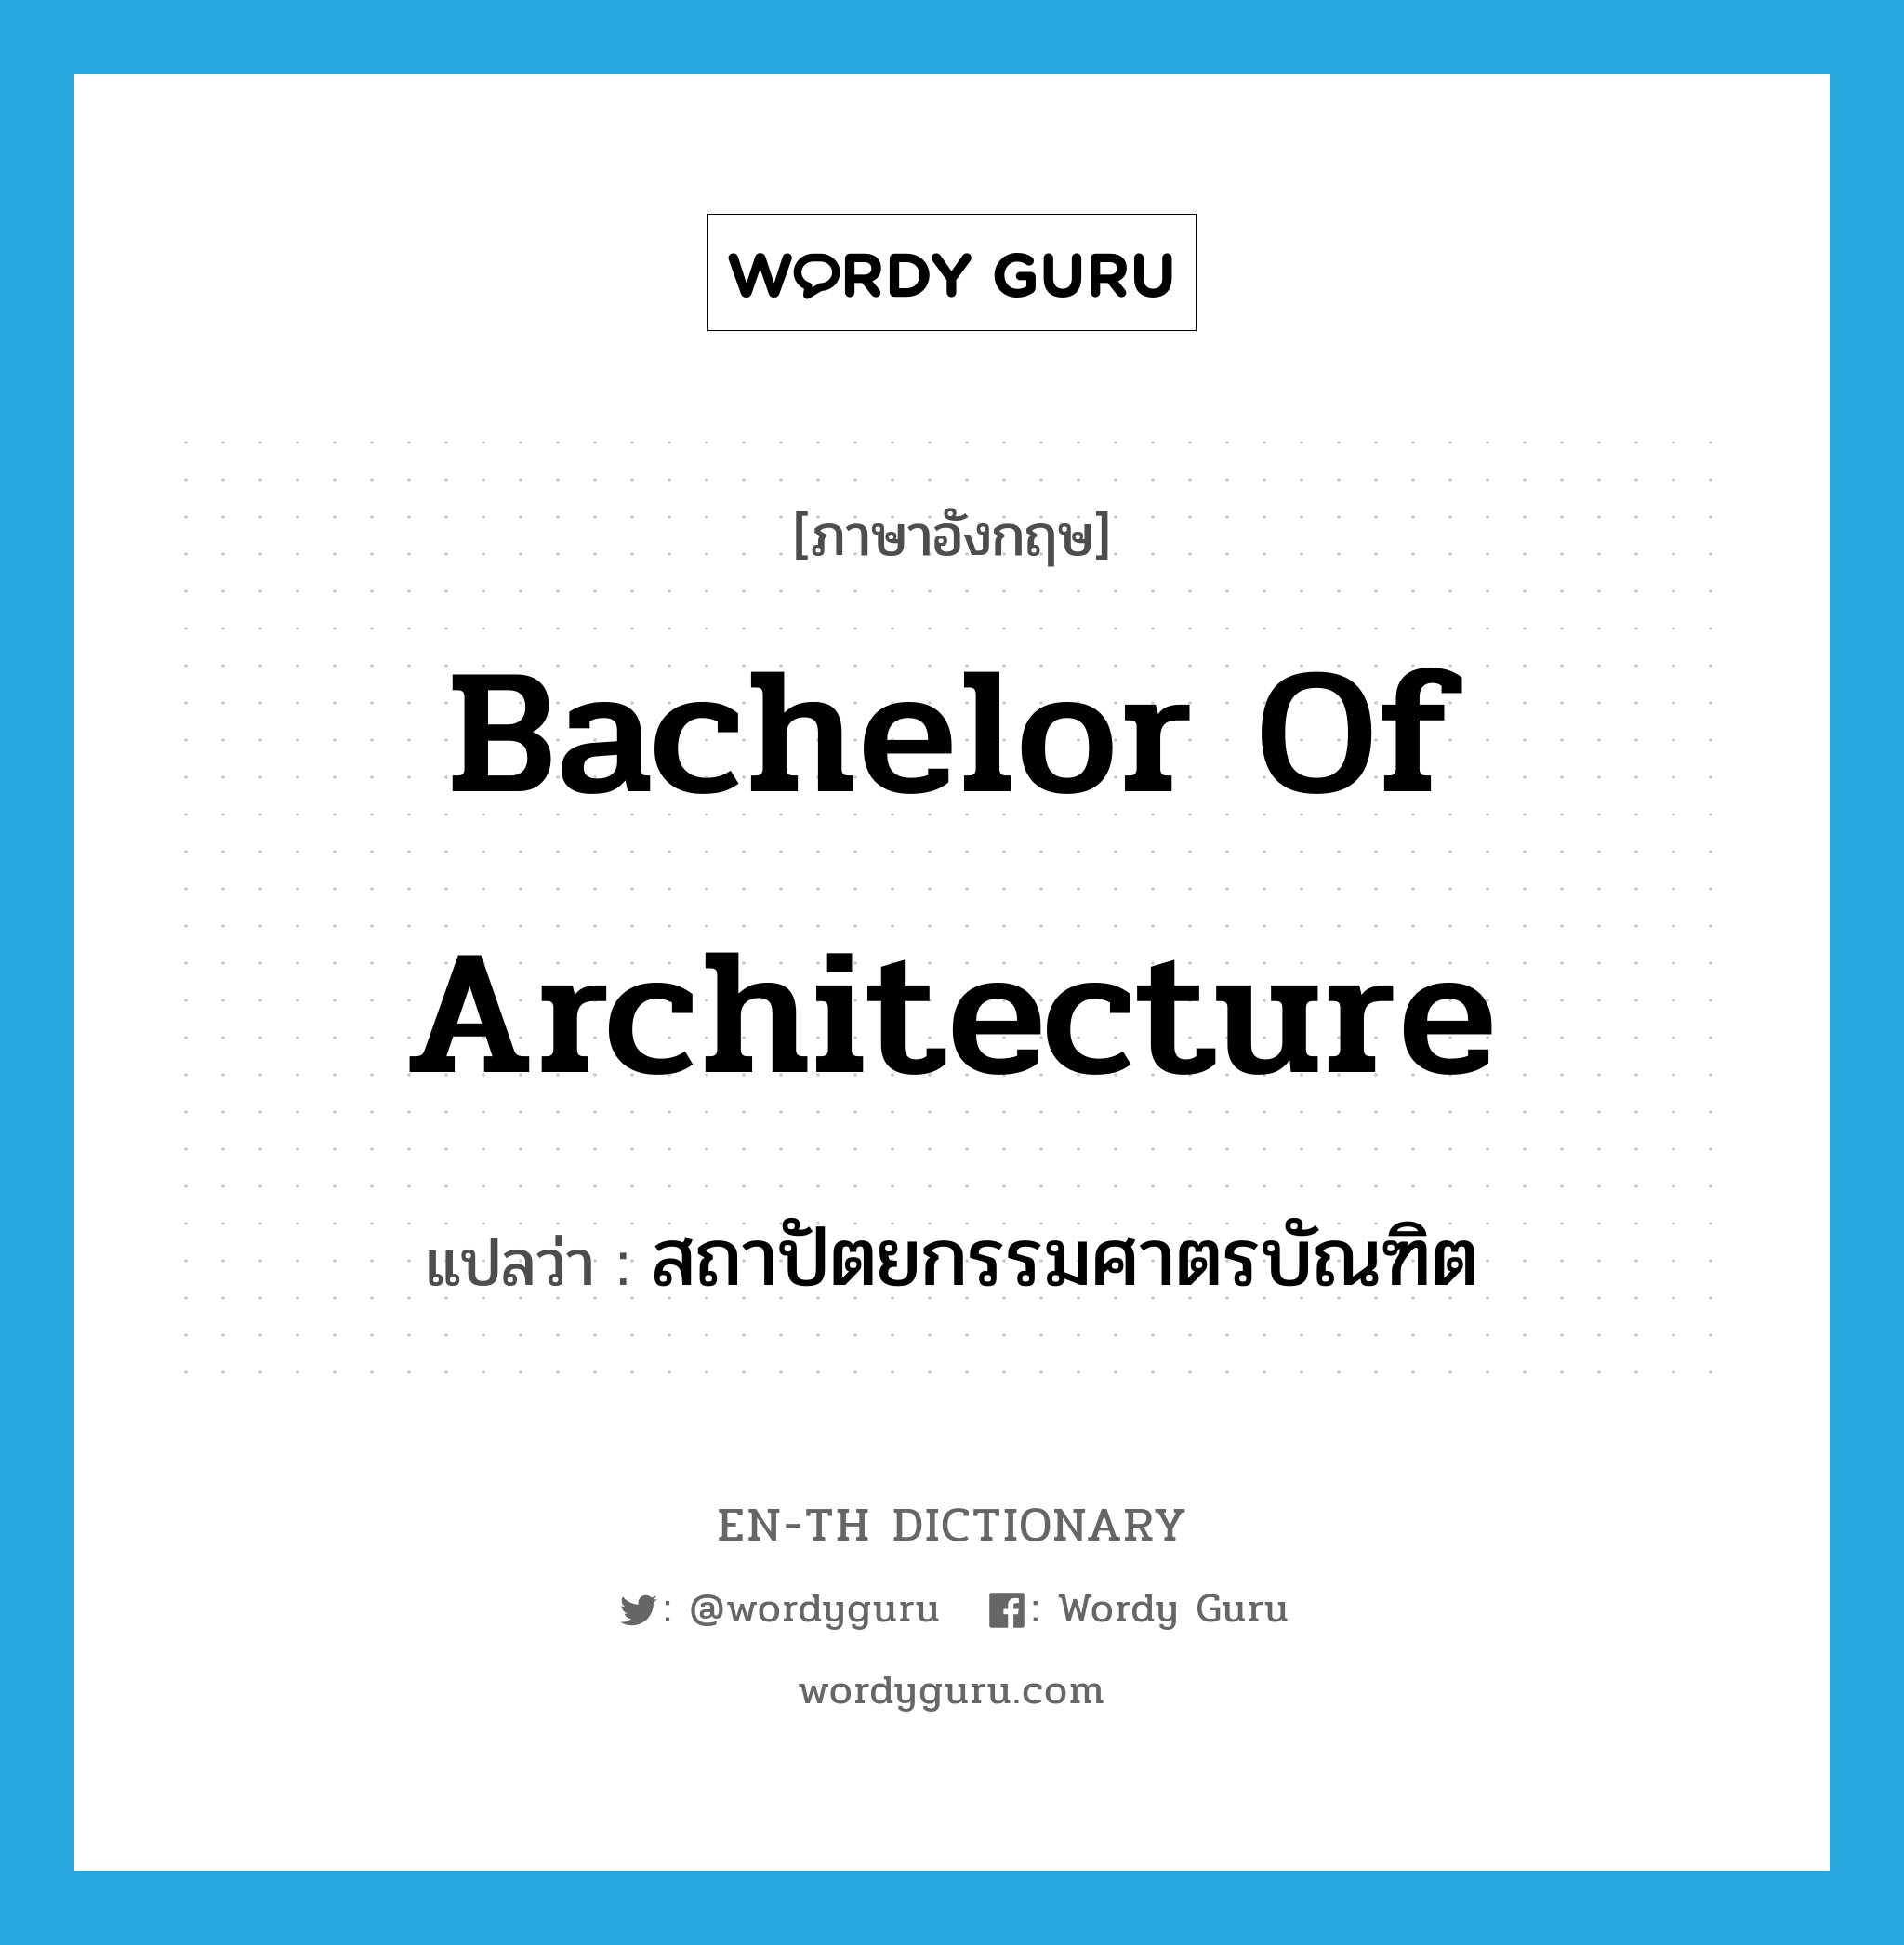 สถาปัตยกรรมศาตรบัณฑิต ภาษาอังกฤษ?, คำศัพท์ภาษาอังกฤษ สถาปัตยกรรมศาตรบัณฑิต แปลว่า Bachelor of Architecture ประเภท N หมวด N